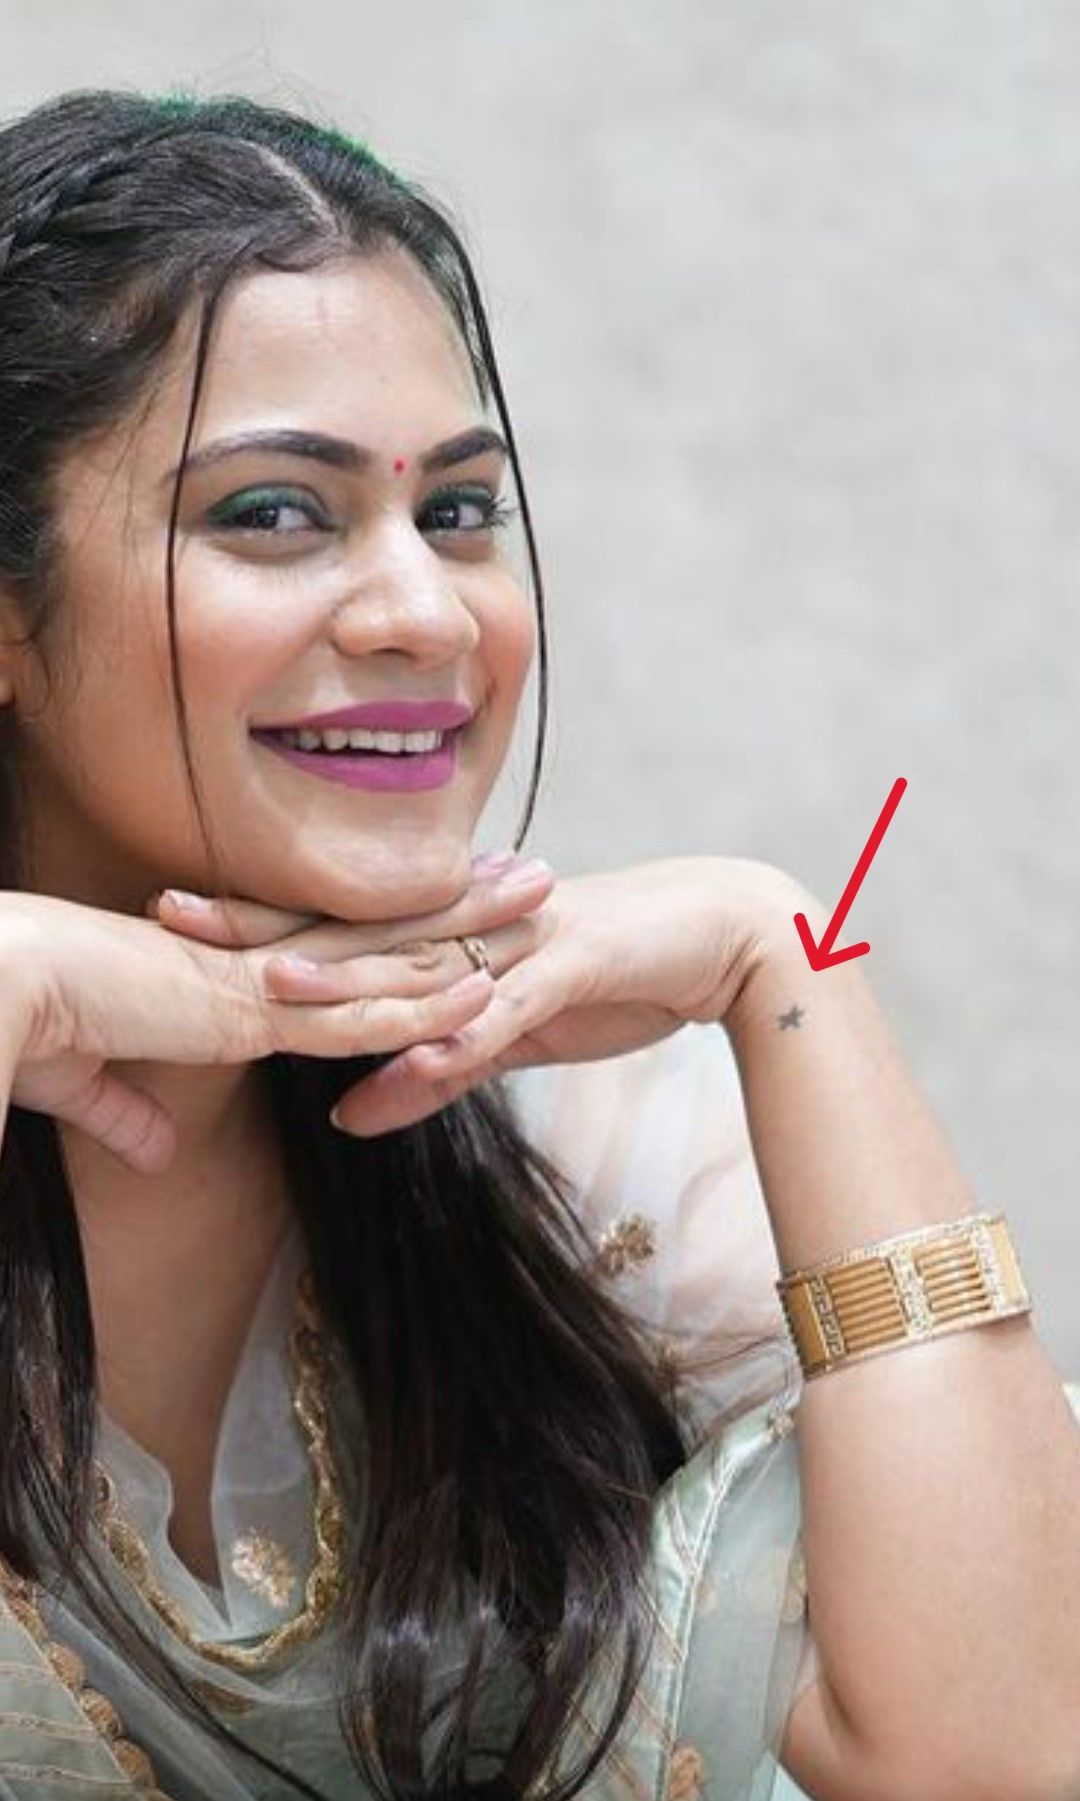 Kritika Malik's star tattoo